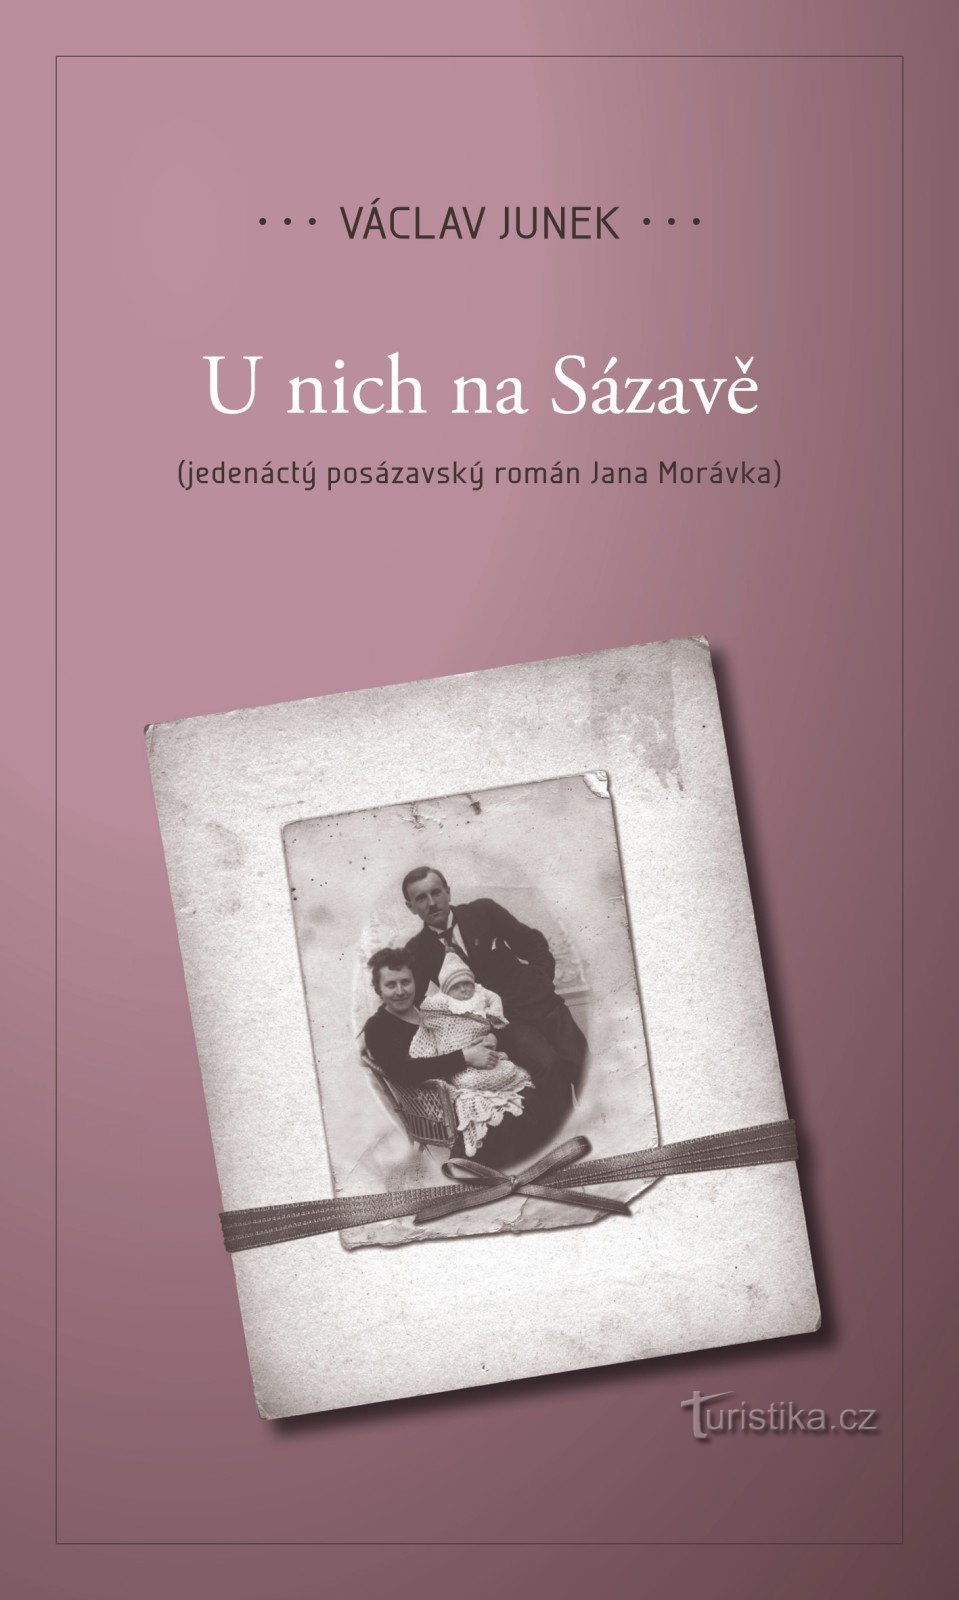 Predstavit ćemo jedanaesti roman U nich Na Sázavá Václava Junke